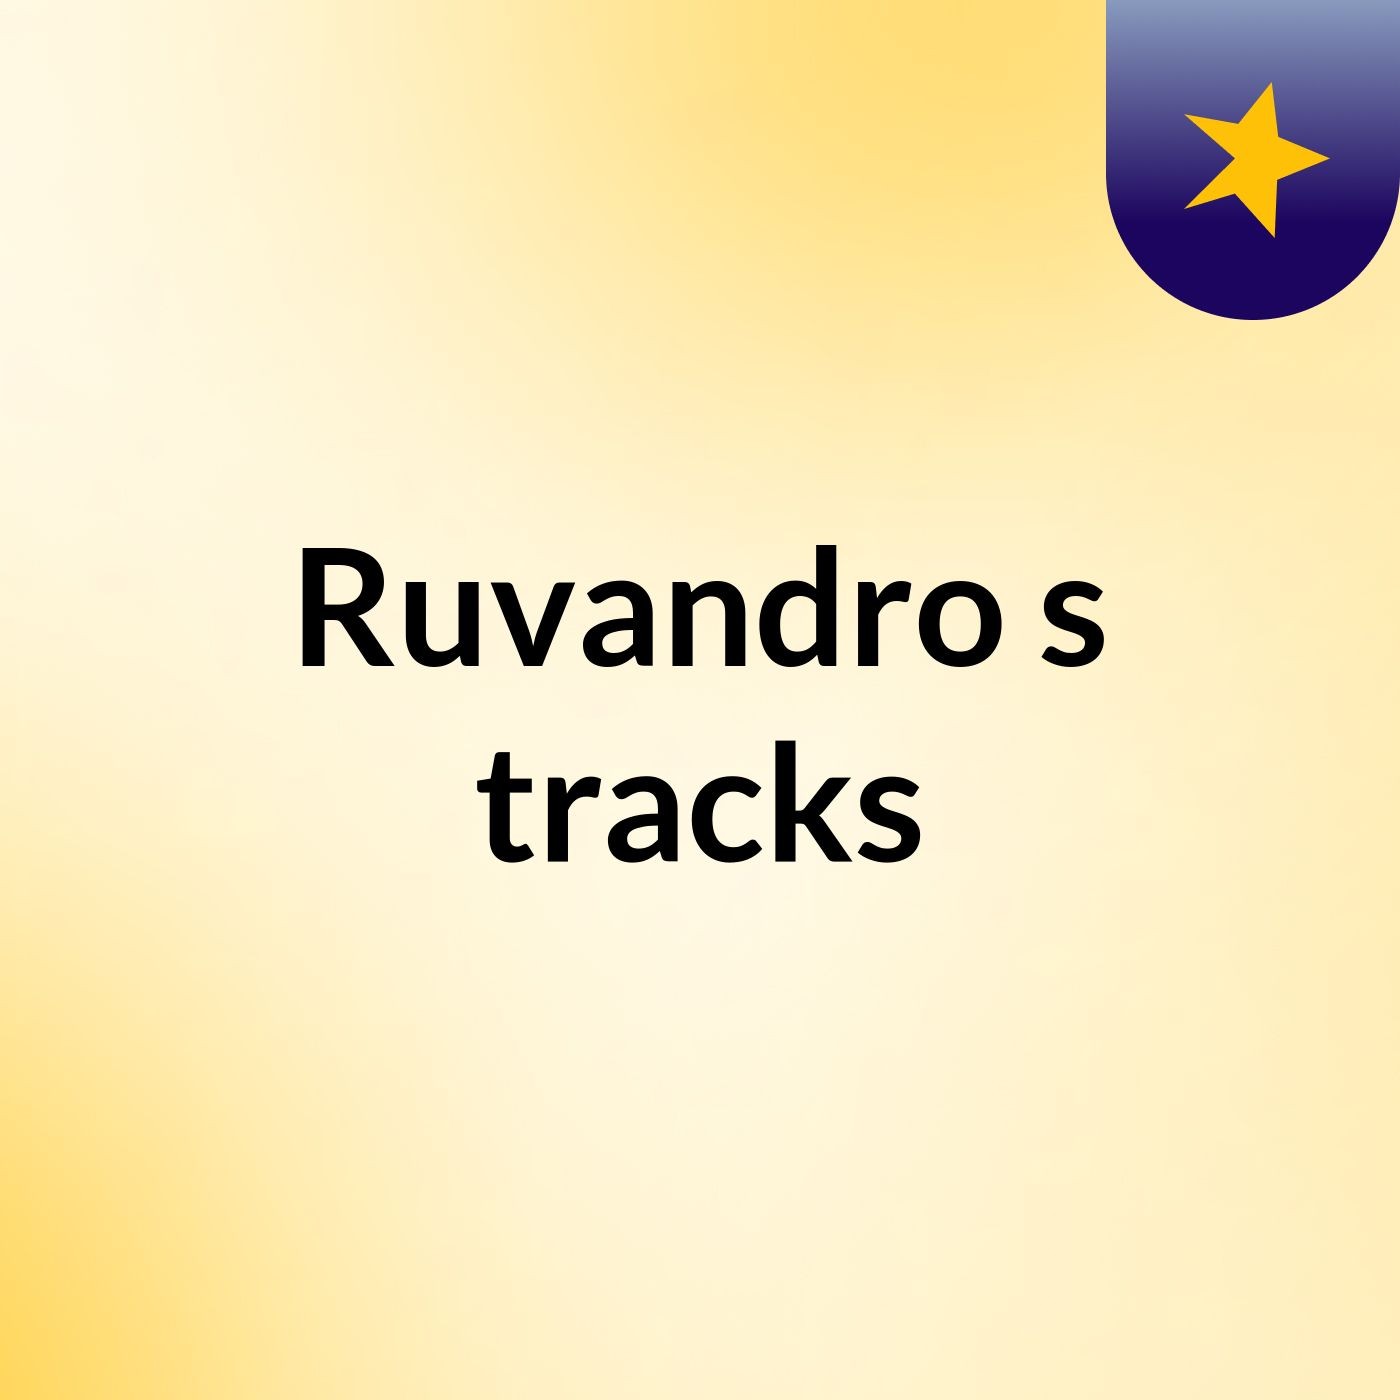 Ruvandro's tracks